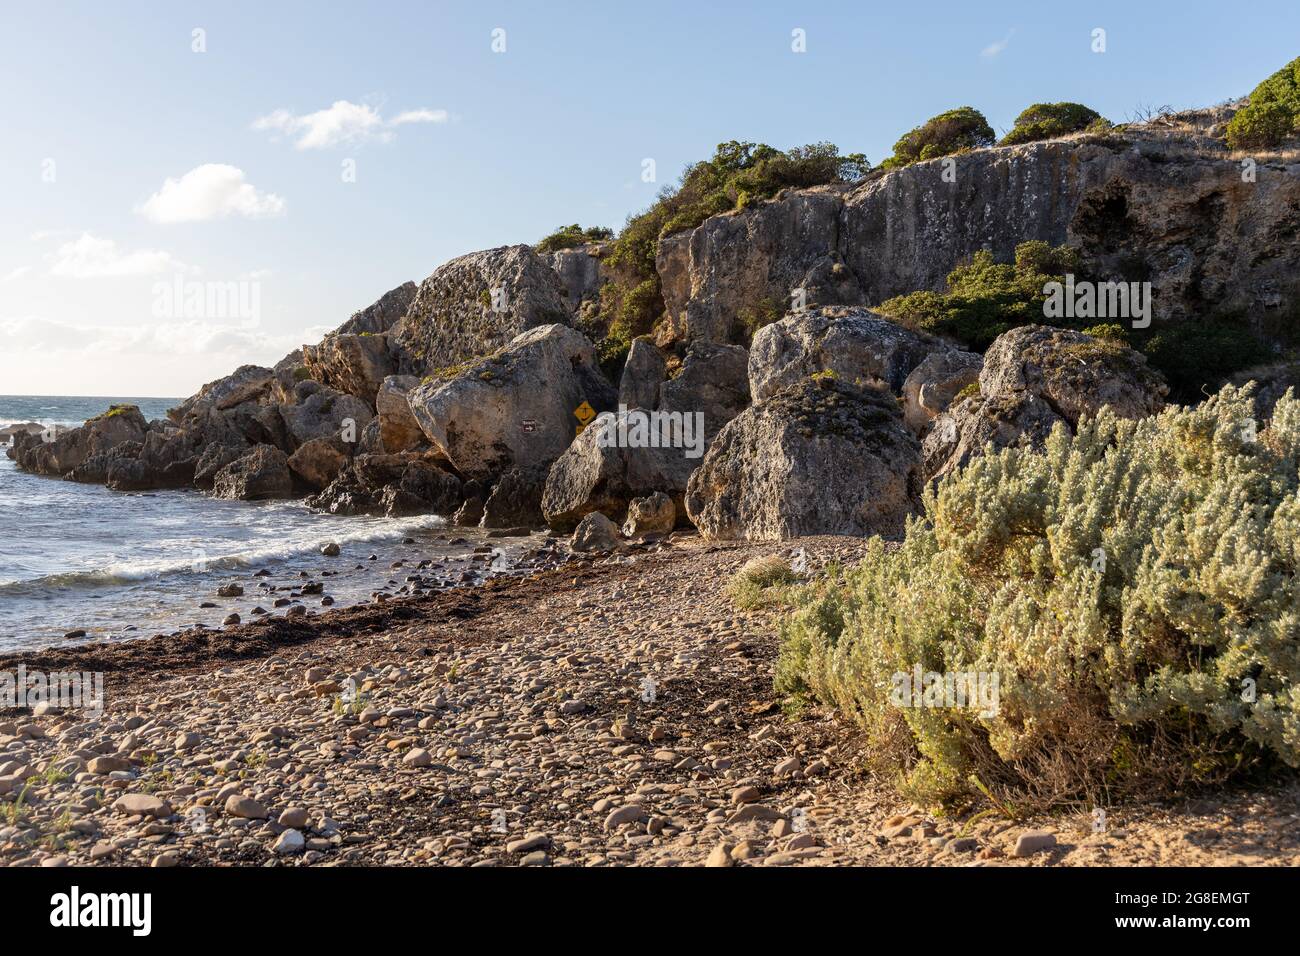 The beach at Stokes Bay Kangaroo Island South Australia on May 9th 2021 Stock Photo